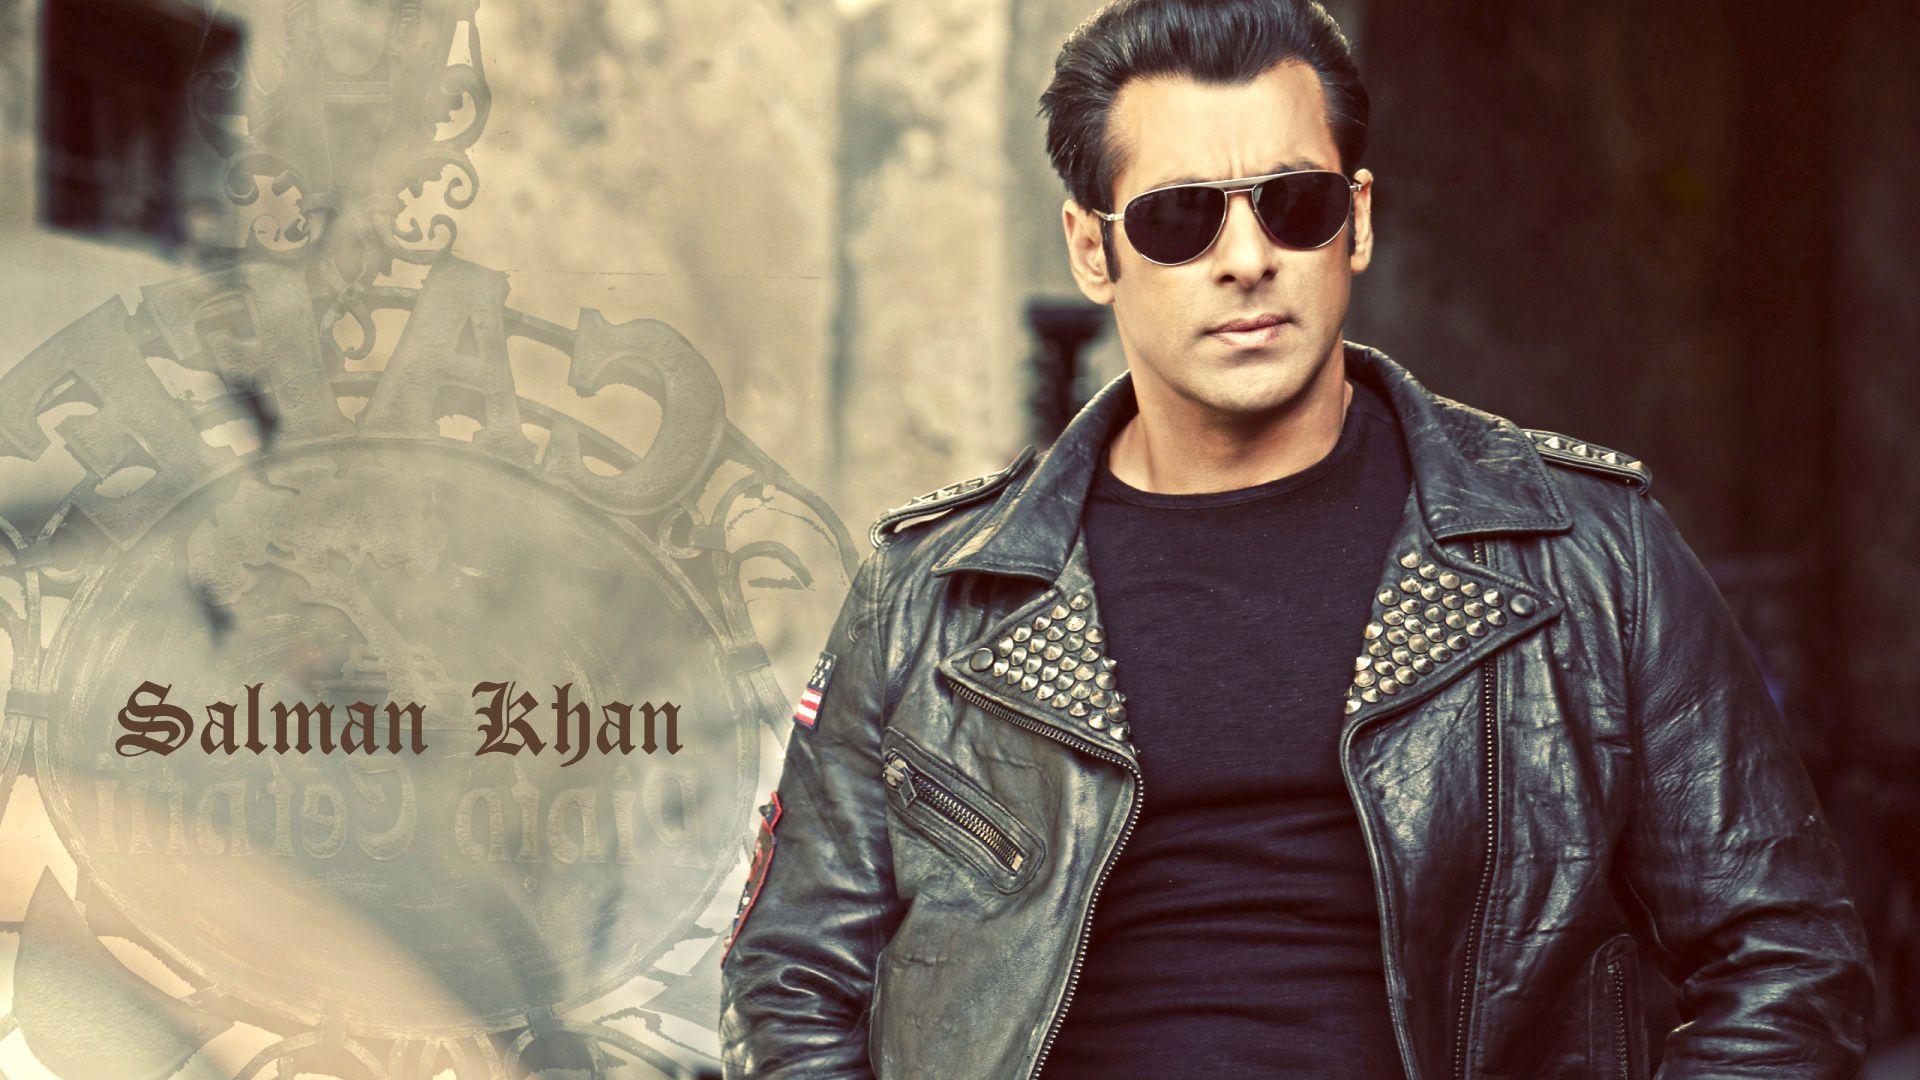 salman khan HD wallpaper 1080p. Salman Khan. Salman